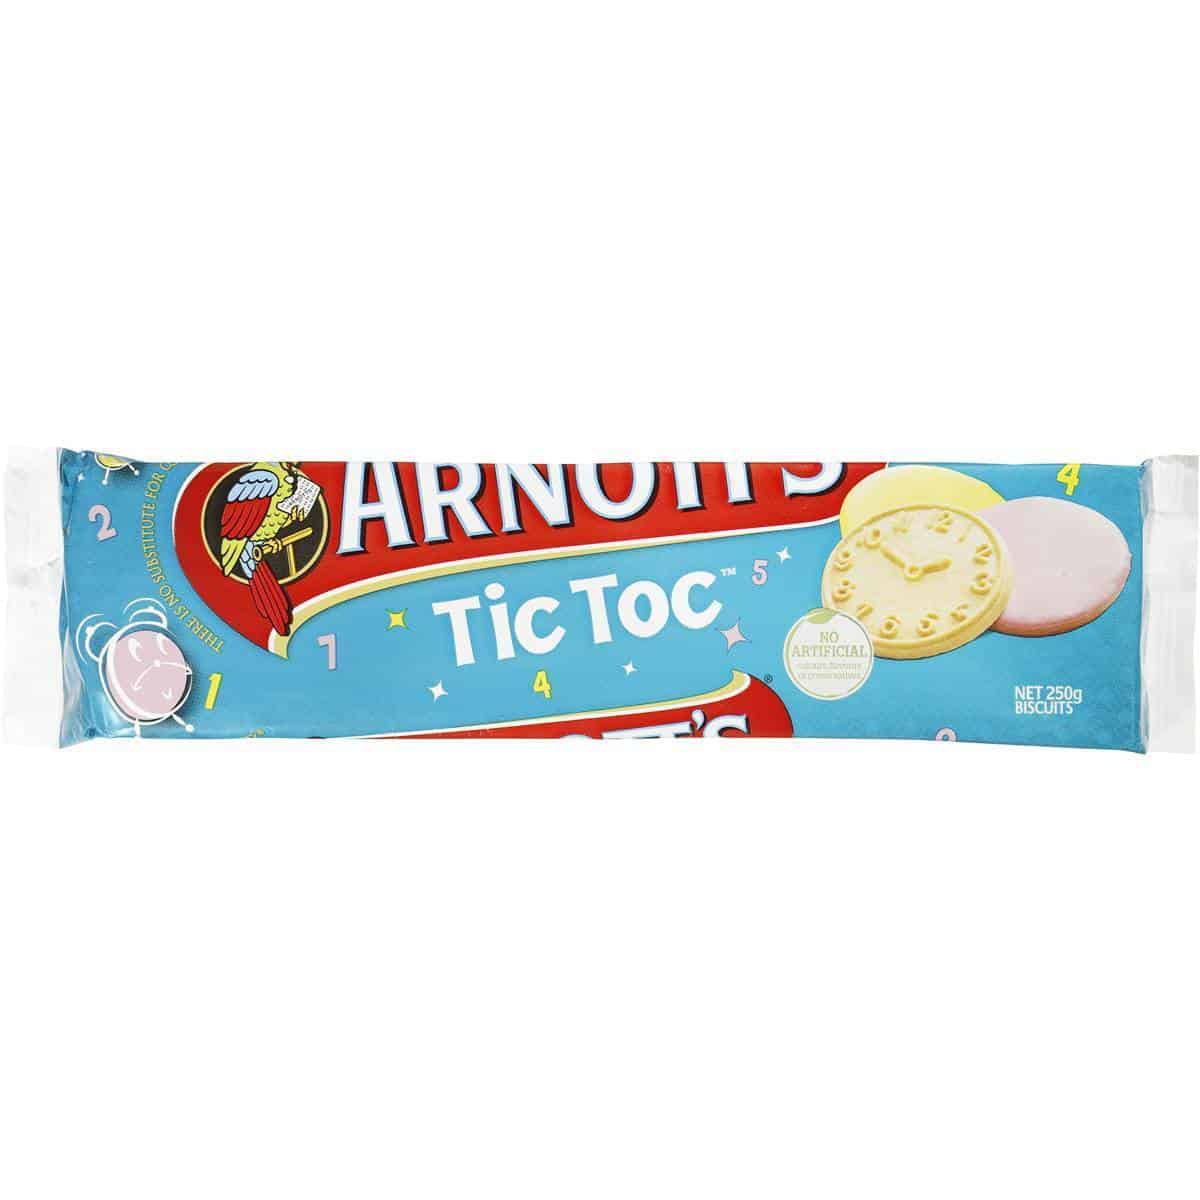 tictoc biscuits